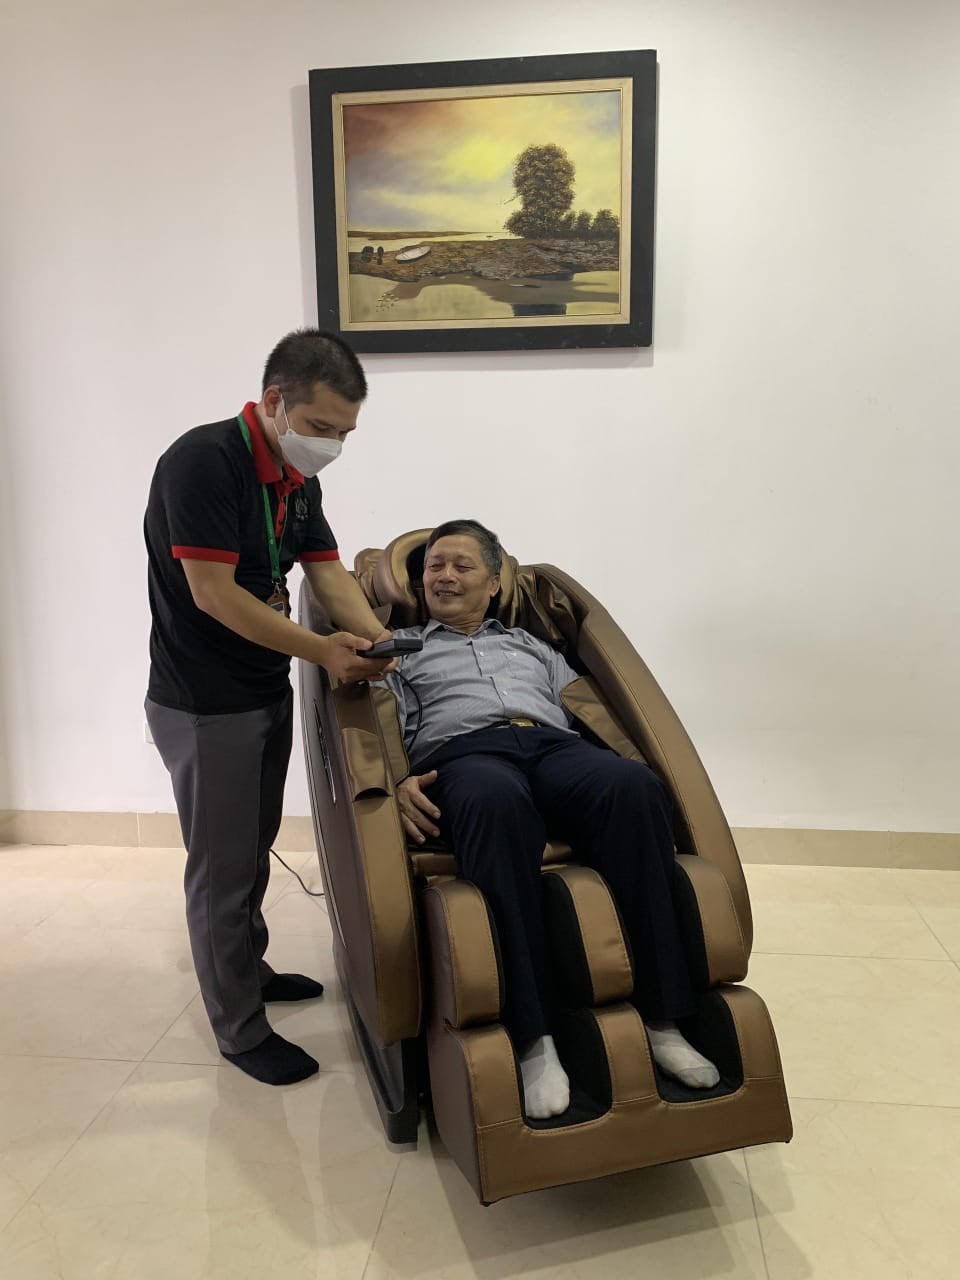 Địa chỉ cung cấp ghế massage uy tín tại Kiên Giang là một trong những nhu cầu được khách hàng quan tâm nhất hiện nay